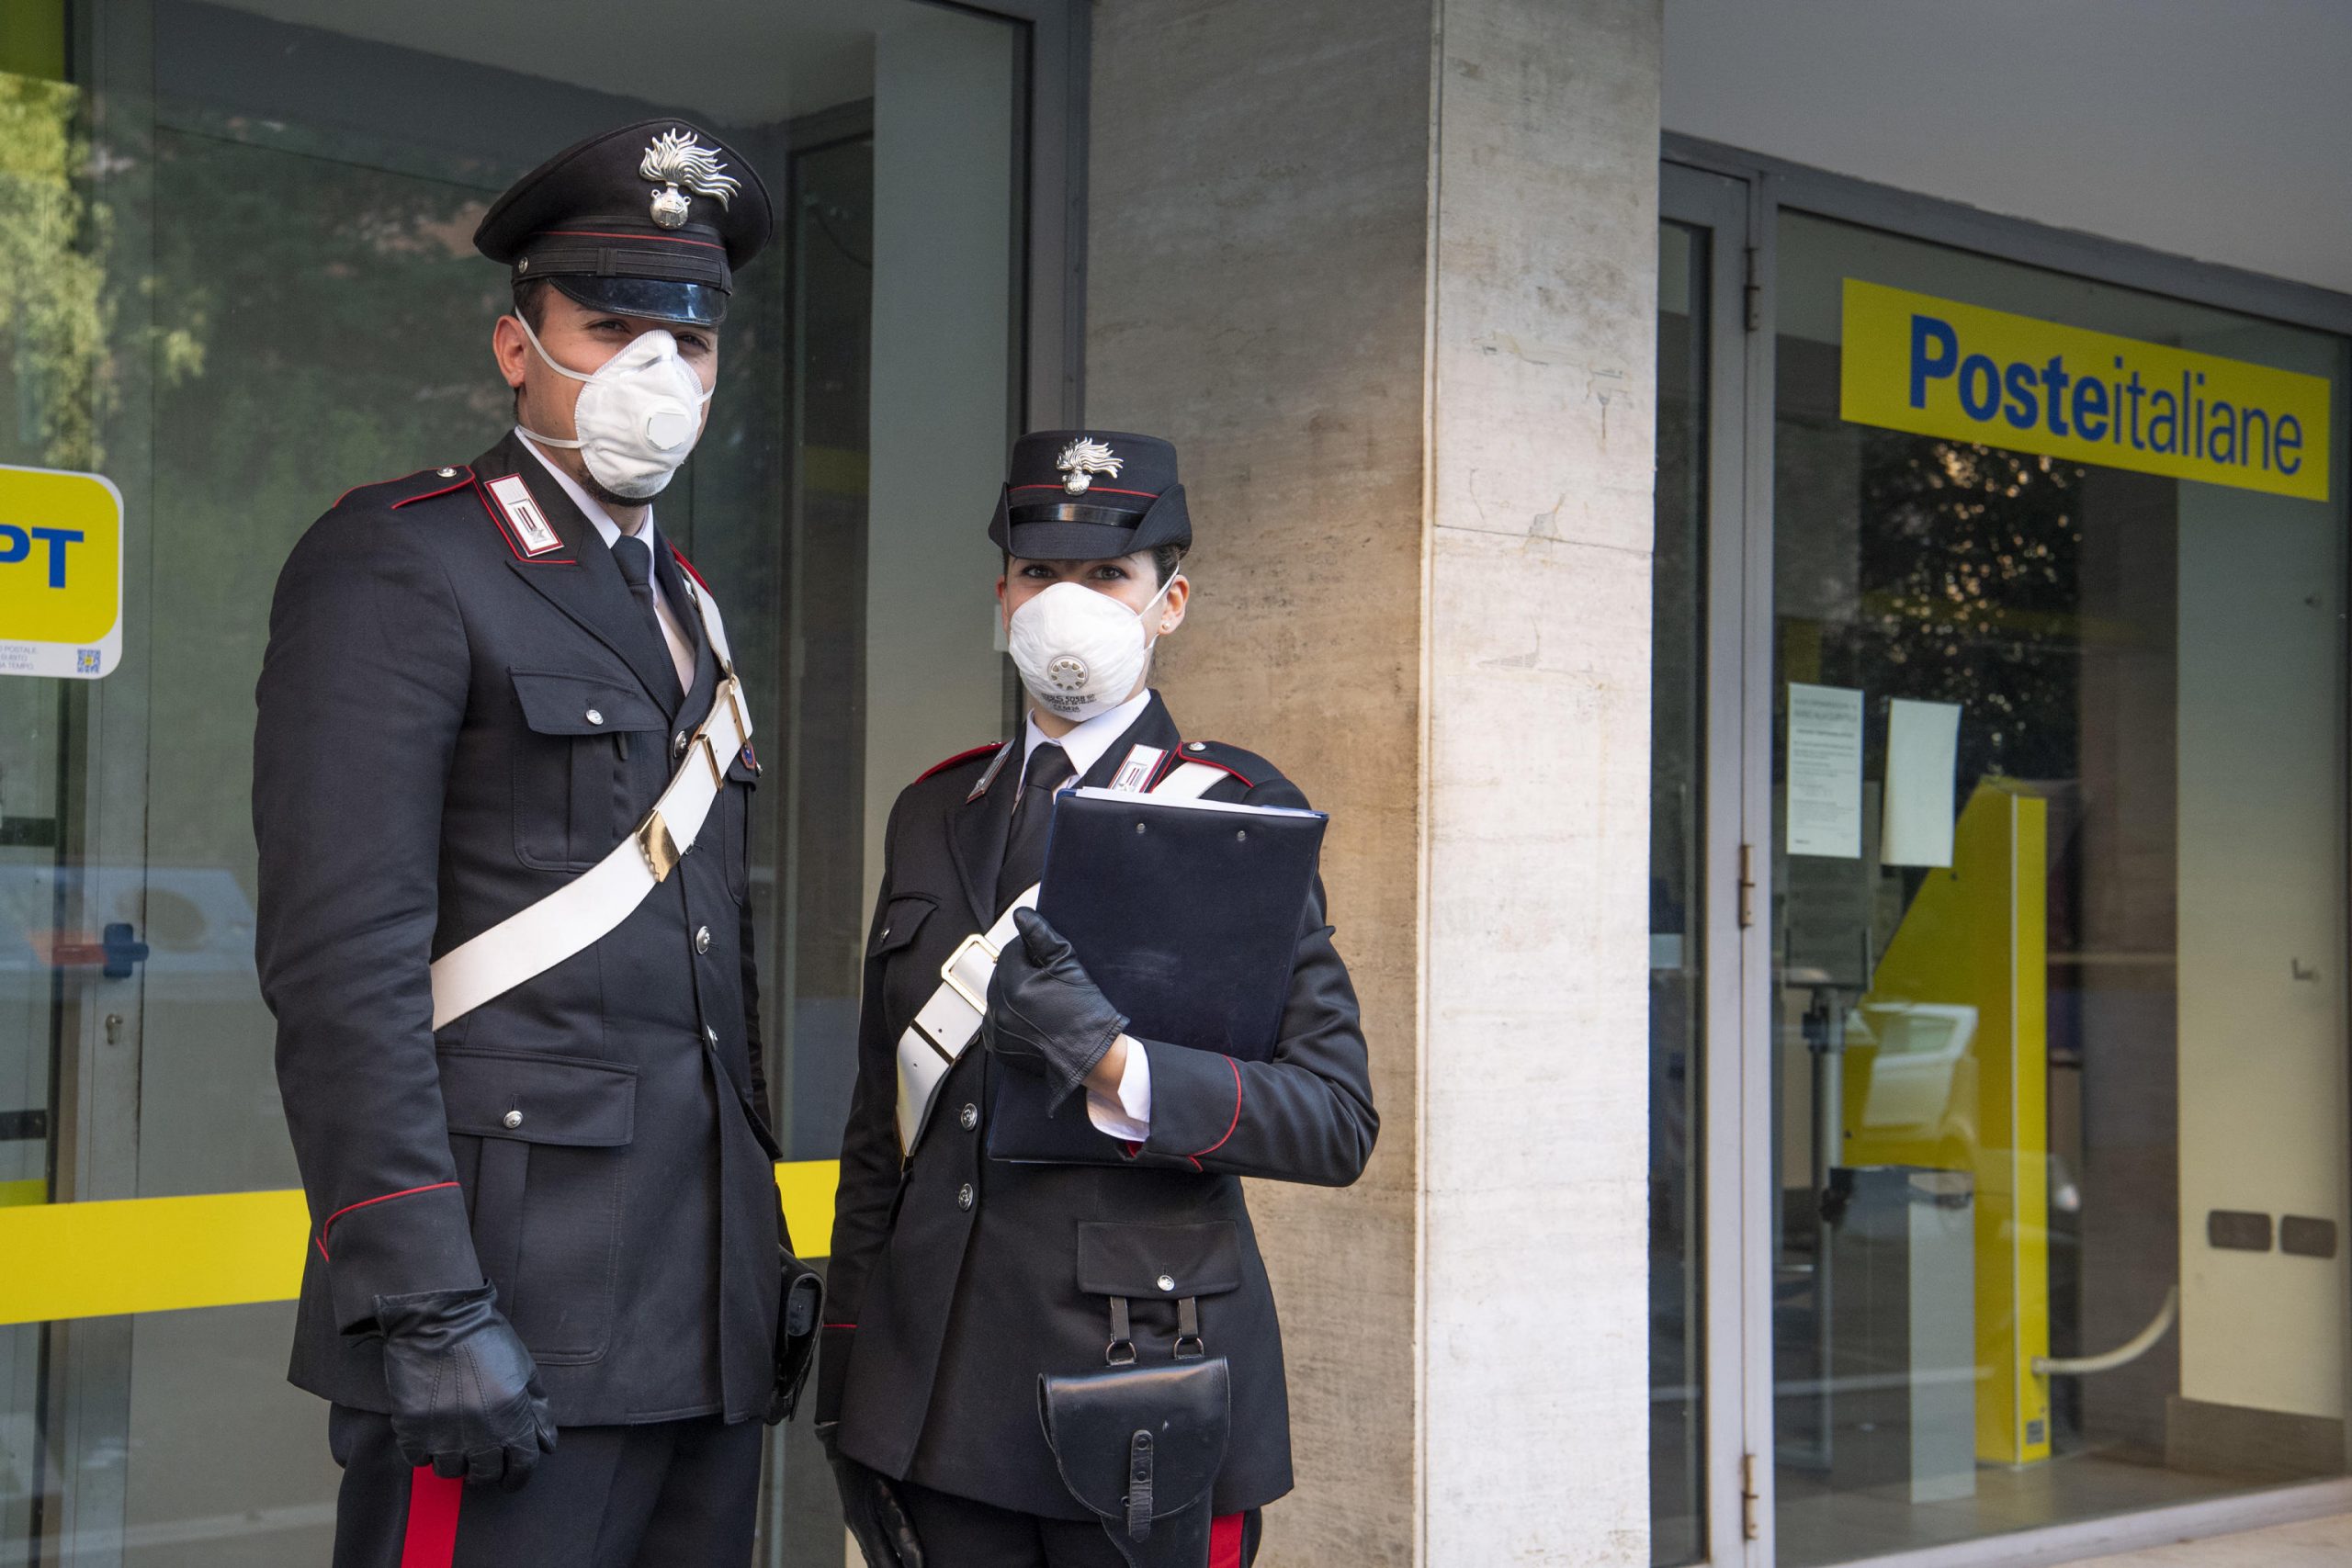 Pensioni: si possono delegare i carabinieri a recarsi agli uffici Postali